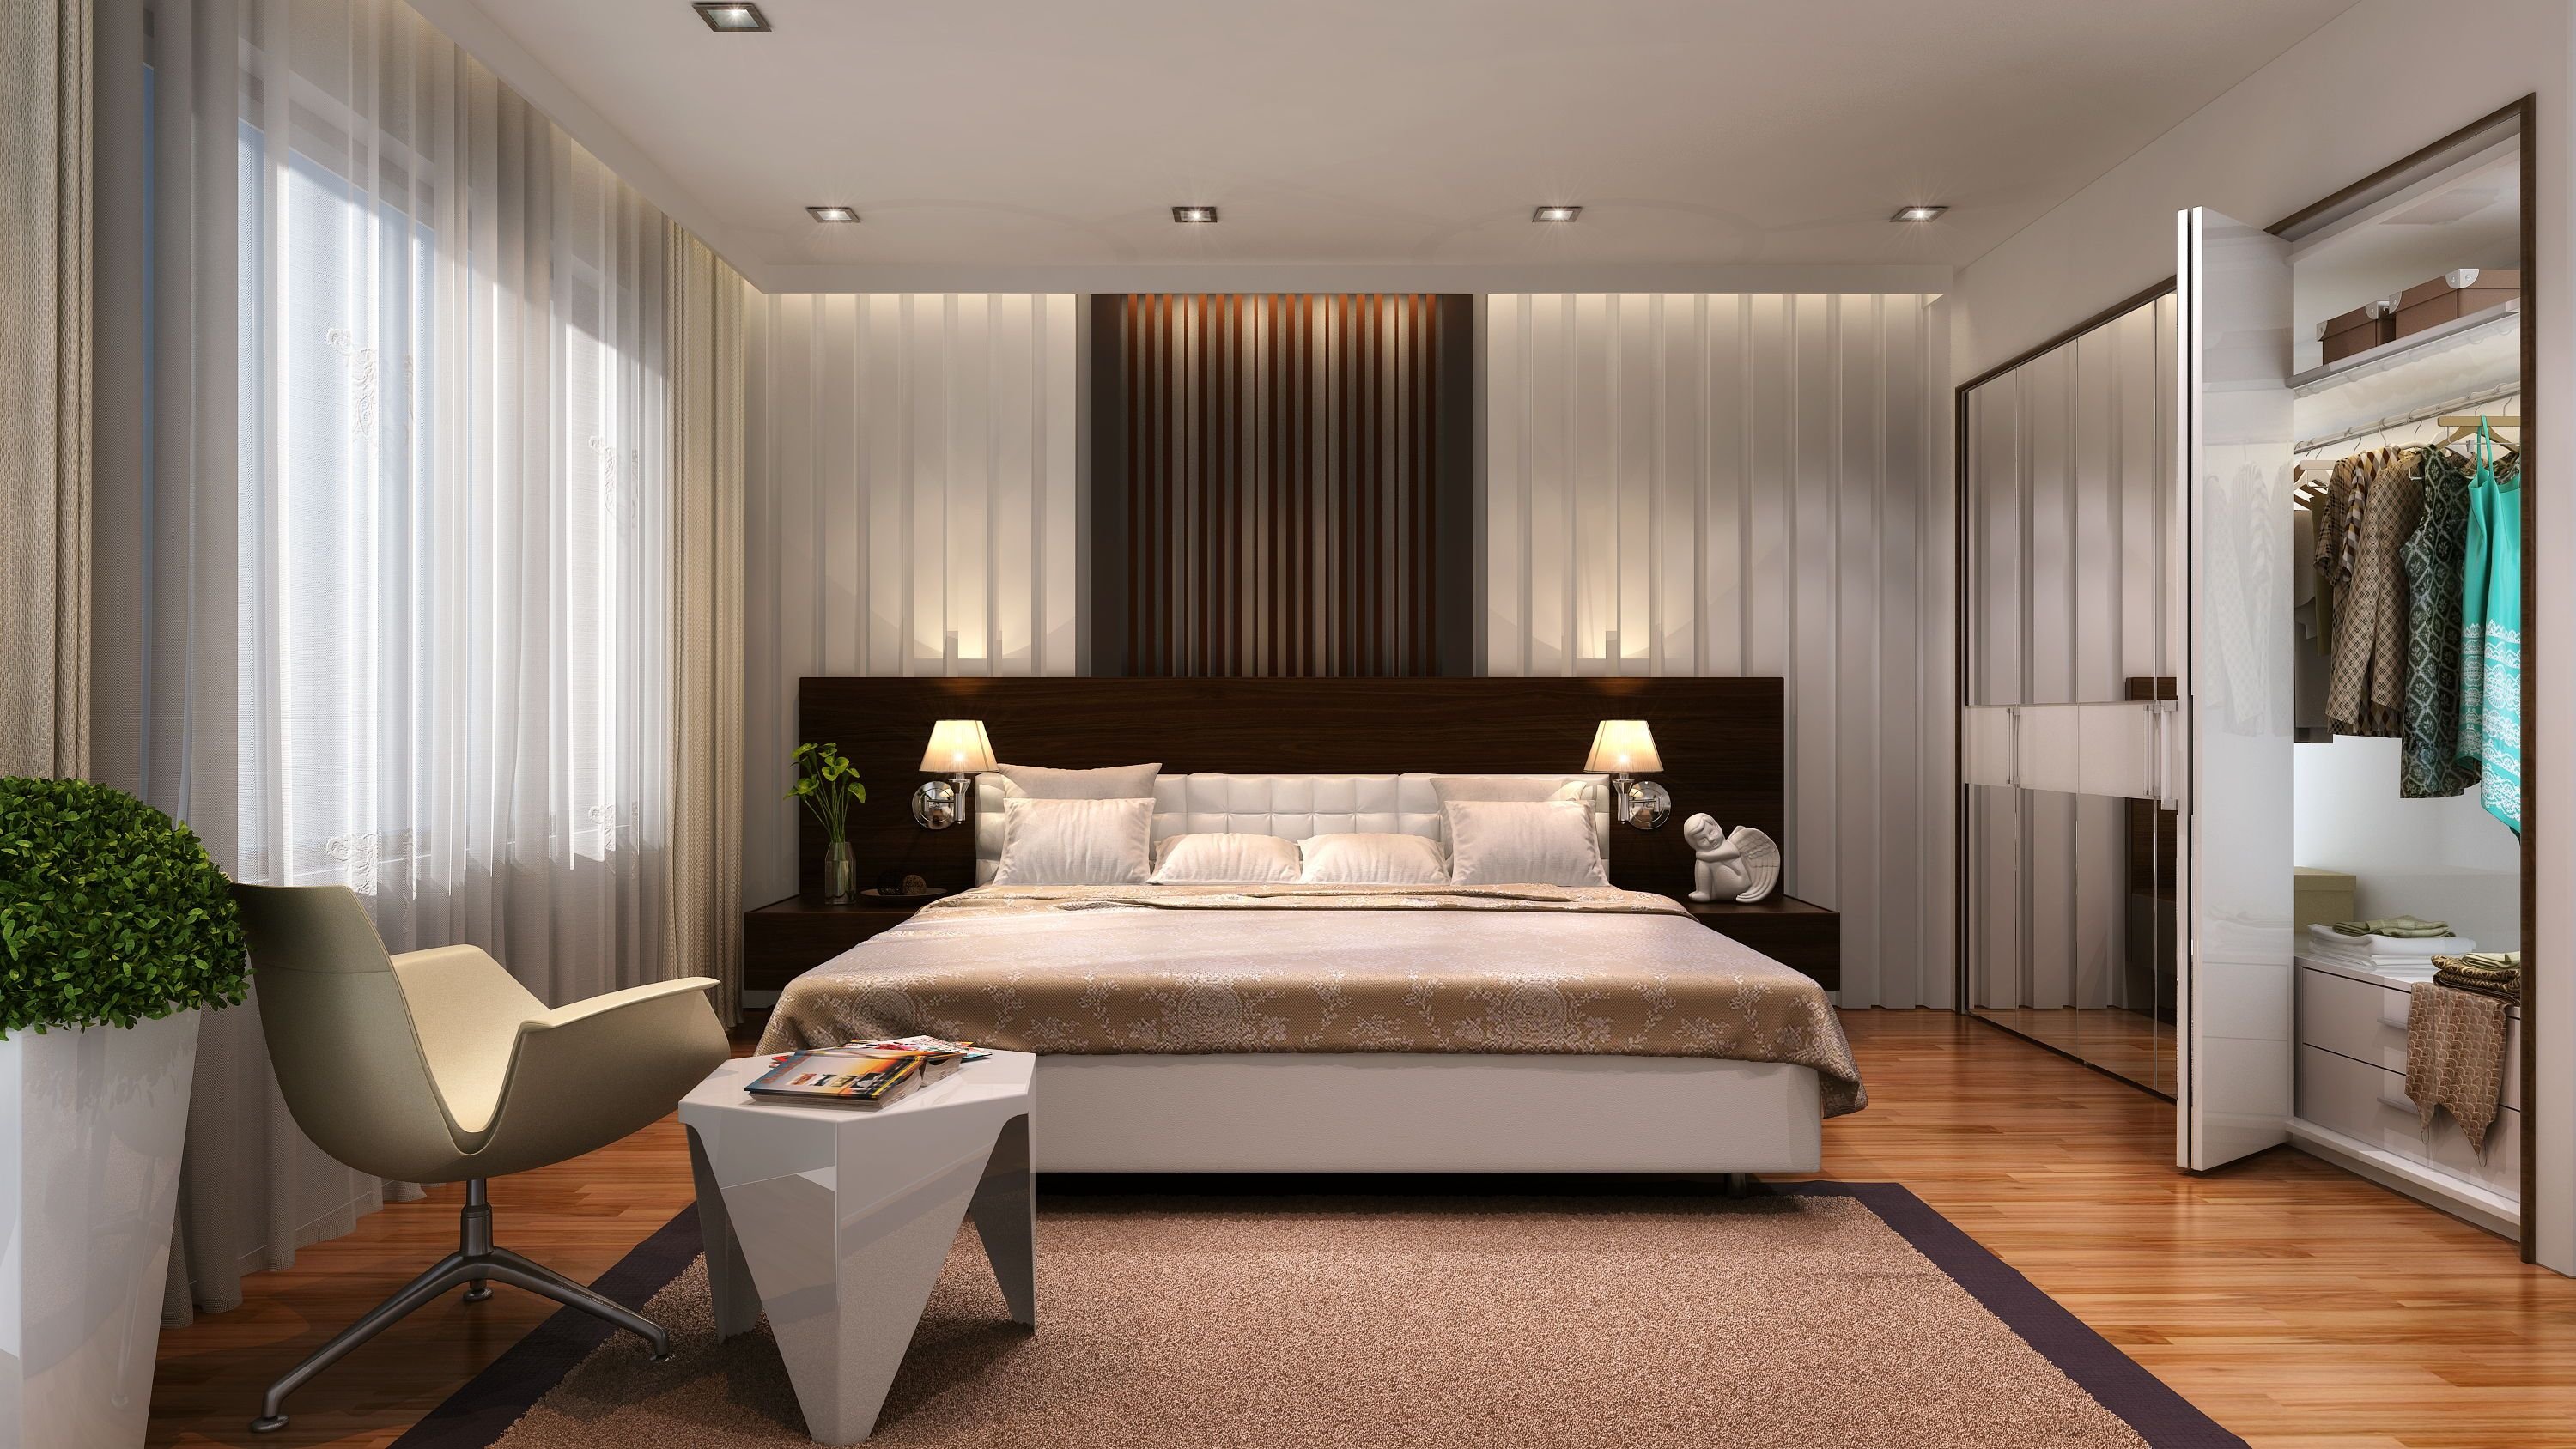 Спальня 3 на 4: дизайн, декор и оптимальная расстановка мебели